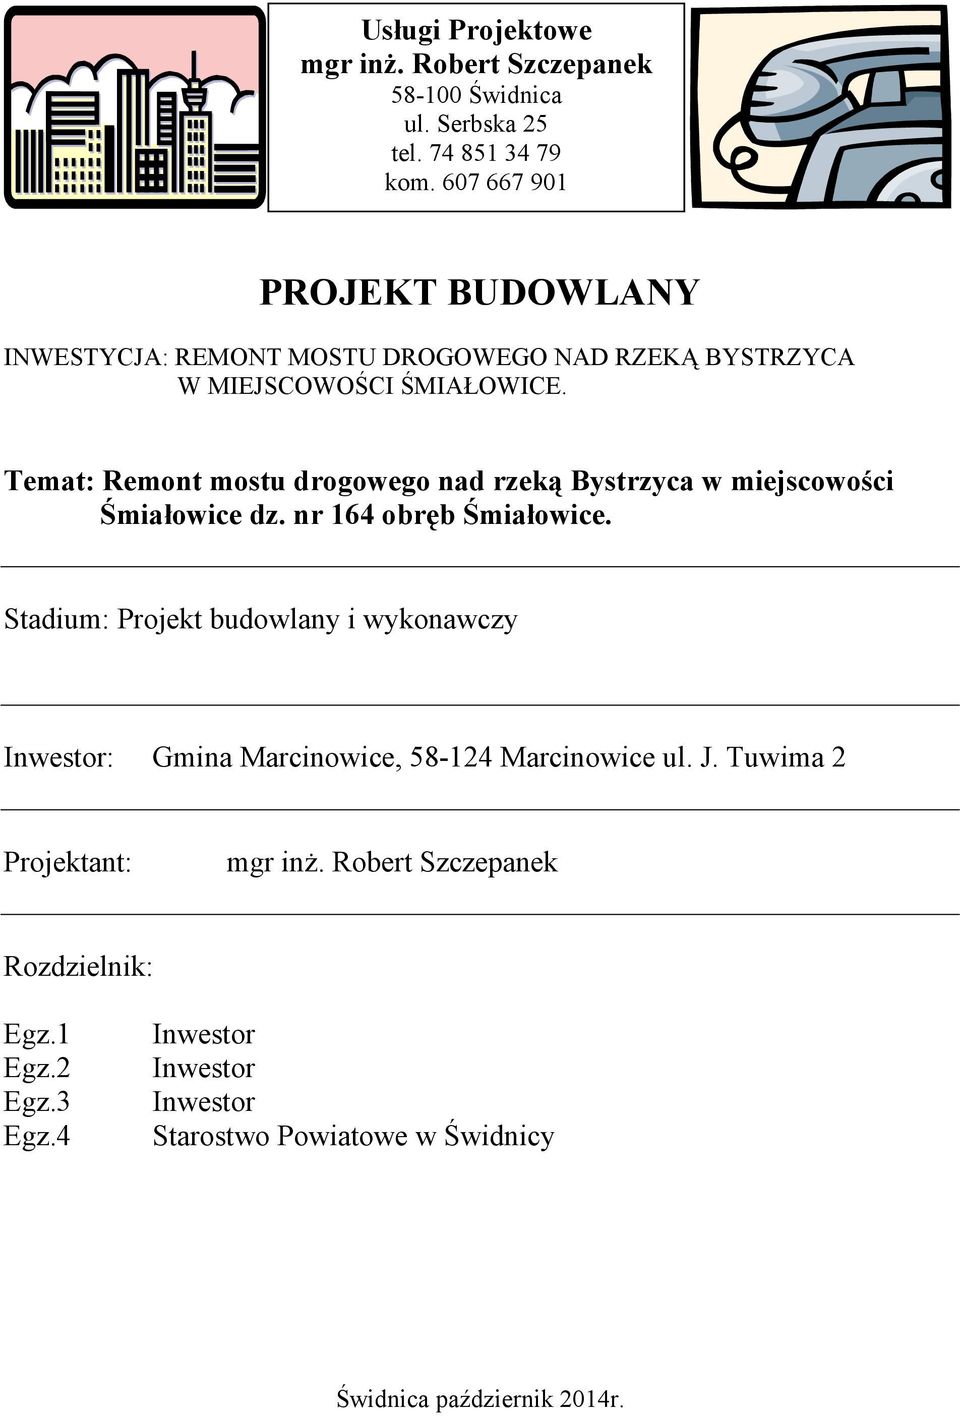 Temat: Remont mostu drogowego nad rzeką Bystrzyca w miejscowości Śmiałowice dz. nr 164 obręb Śmiałowice.